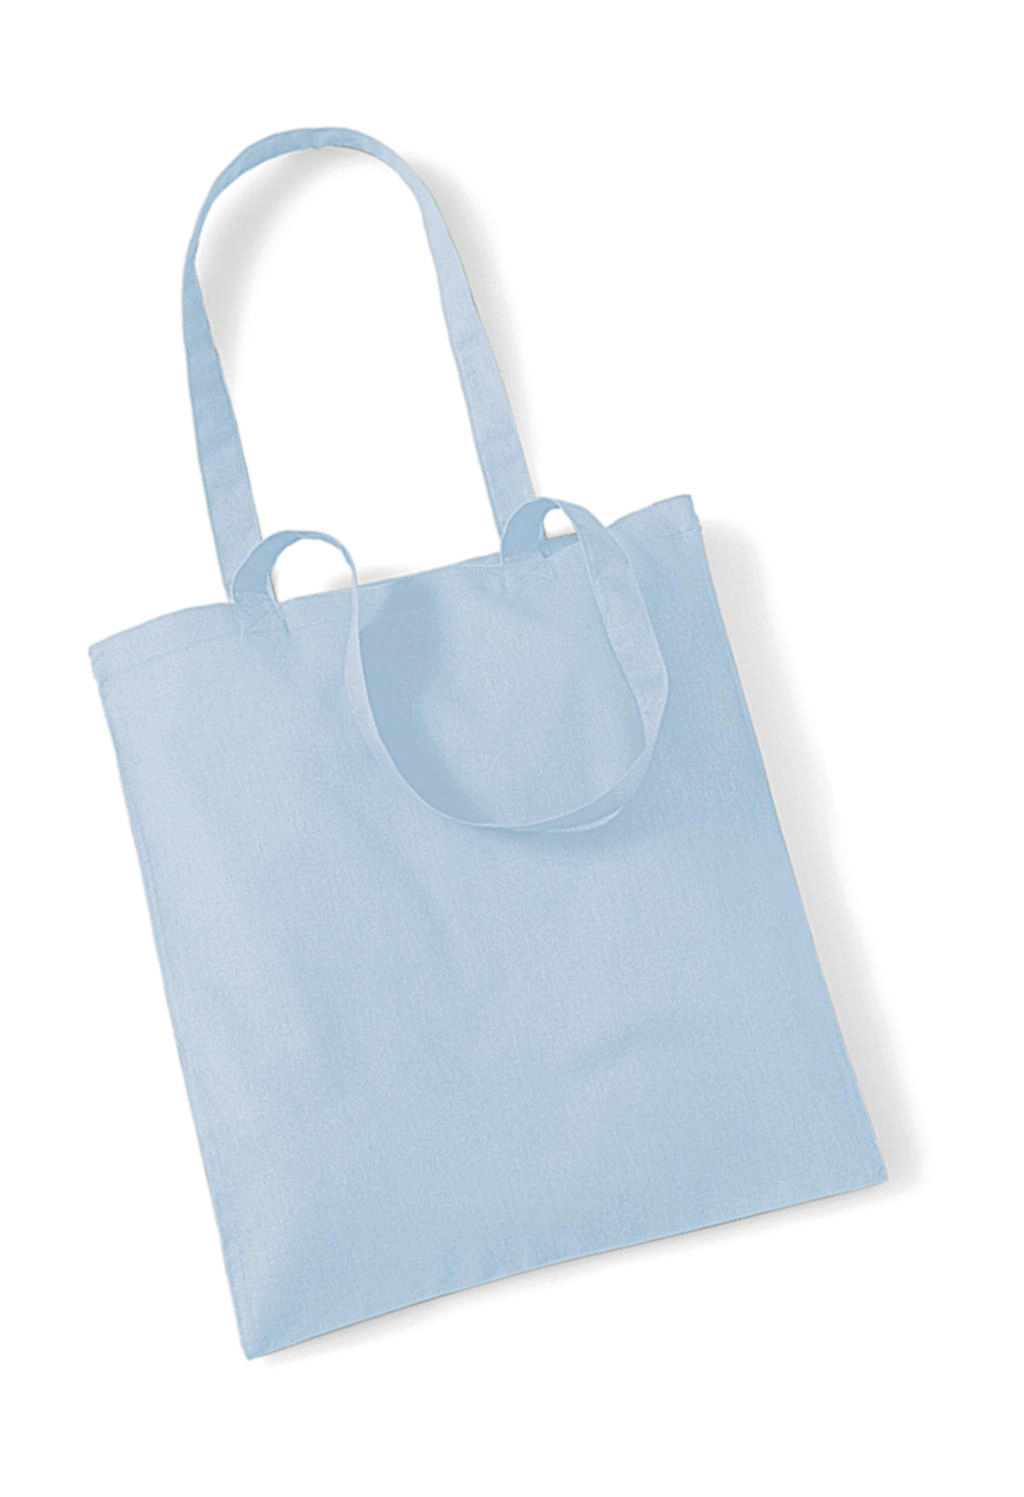 Bag for Life - Long Handles zum Besticken und Bedrucken in der Farbe Pastel Blue mit Ihren Logo, Schriftzug oder Motiv.